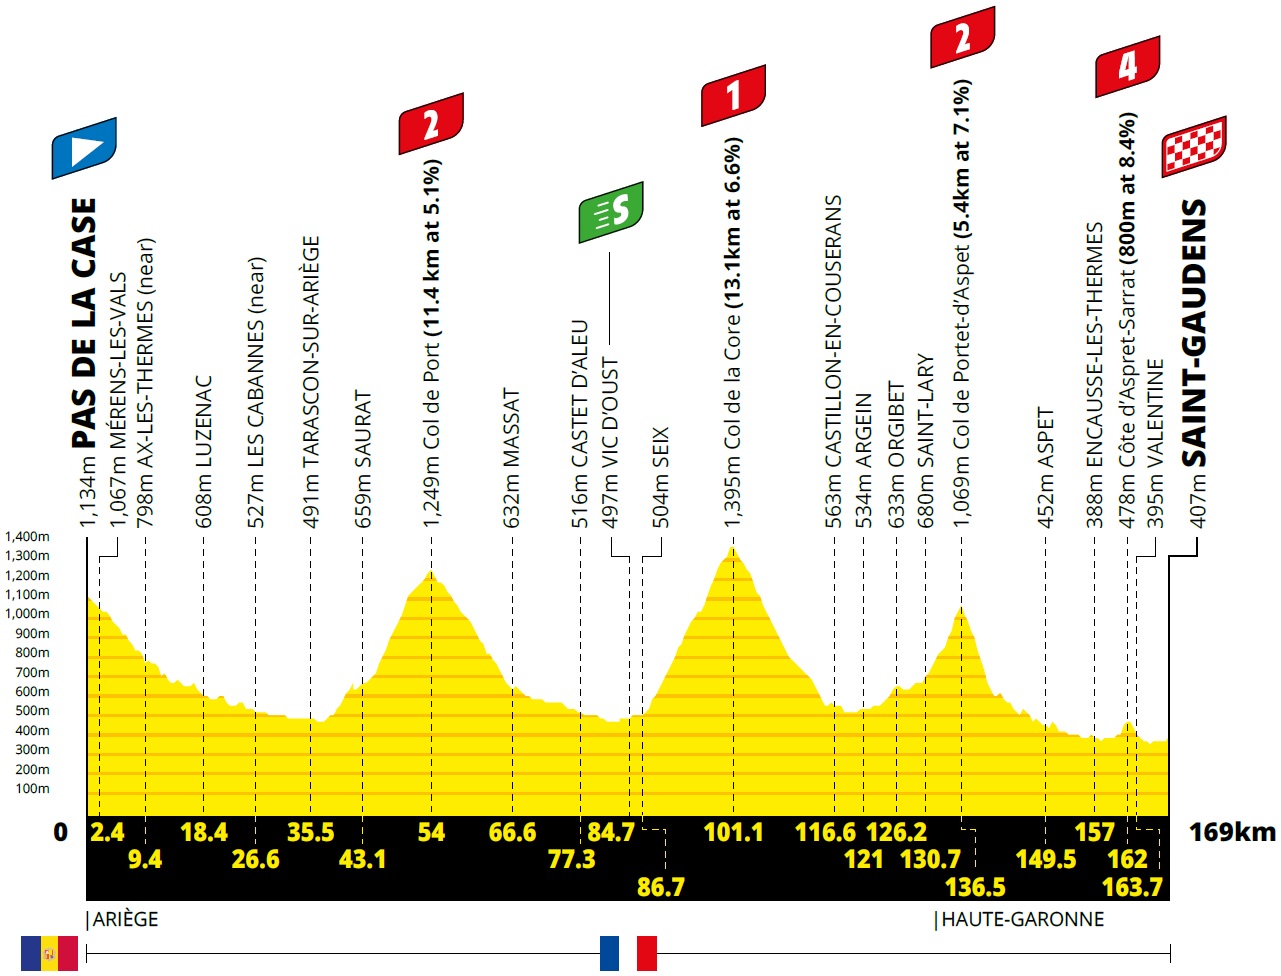 Vorschau & Favoriten Tour de France 2021 - Etappe 16